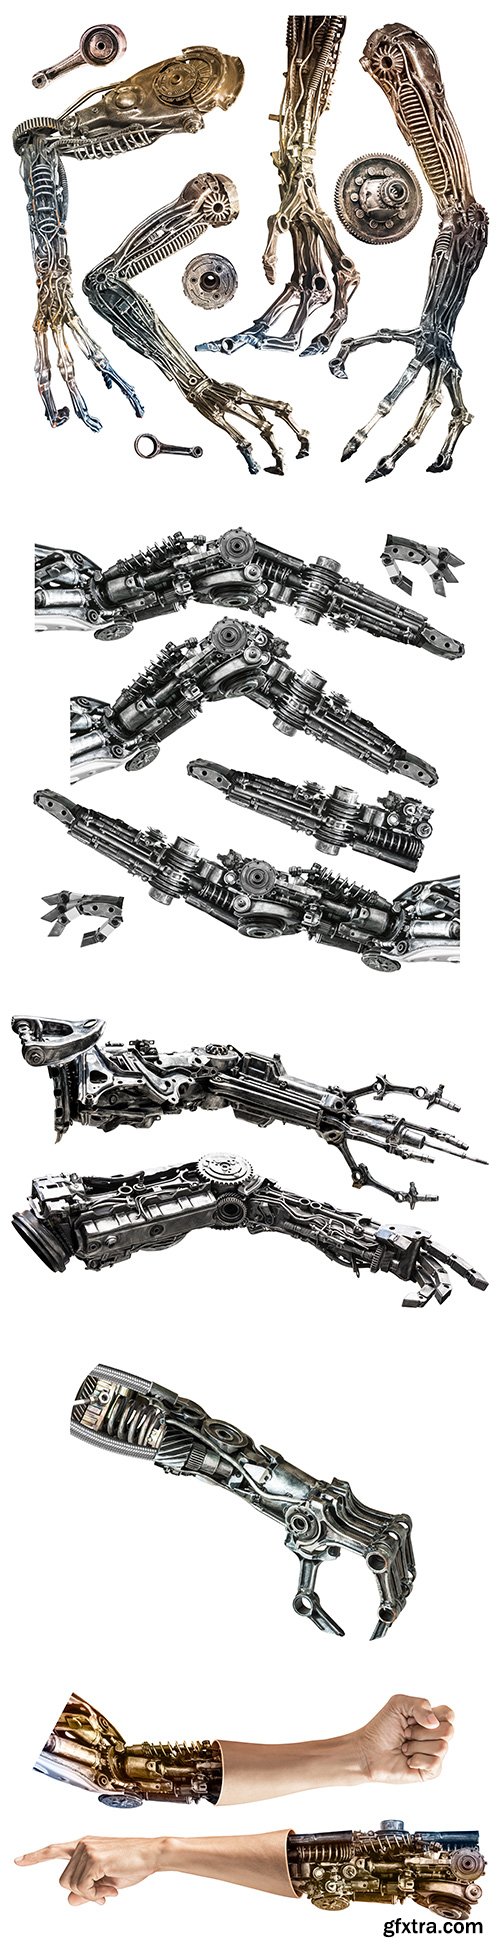 Metallic Robot Hand Isolated - 10xJPGs